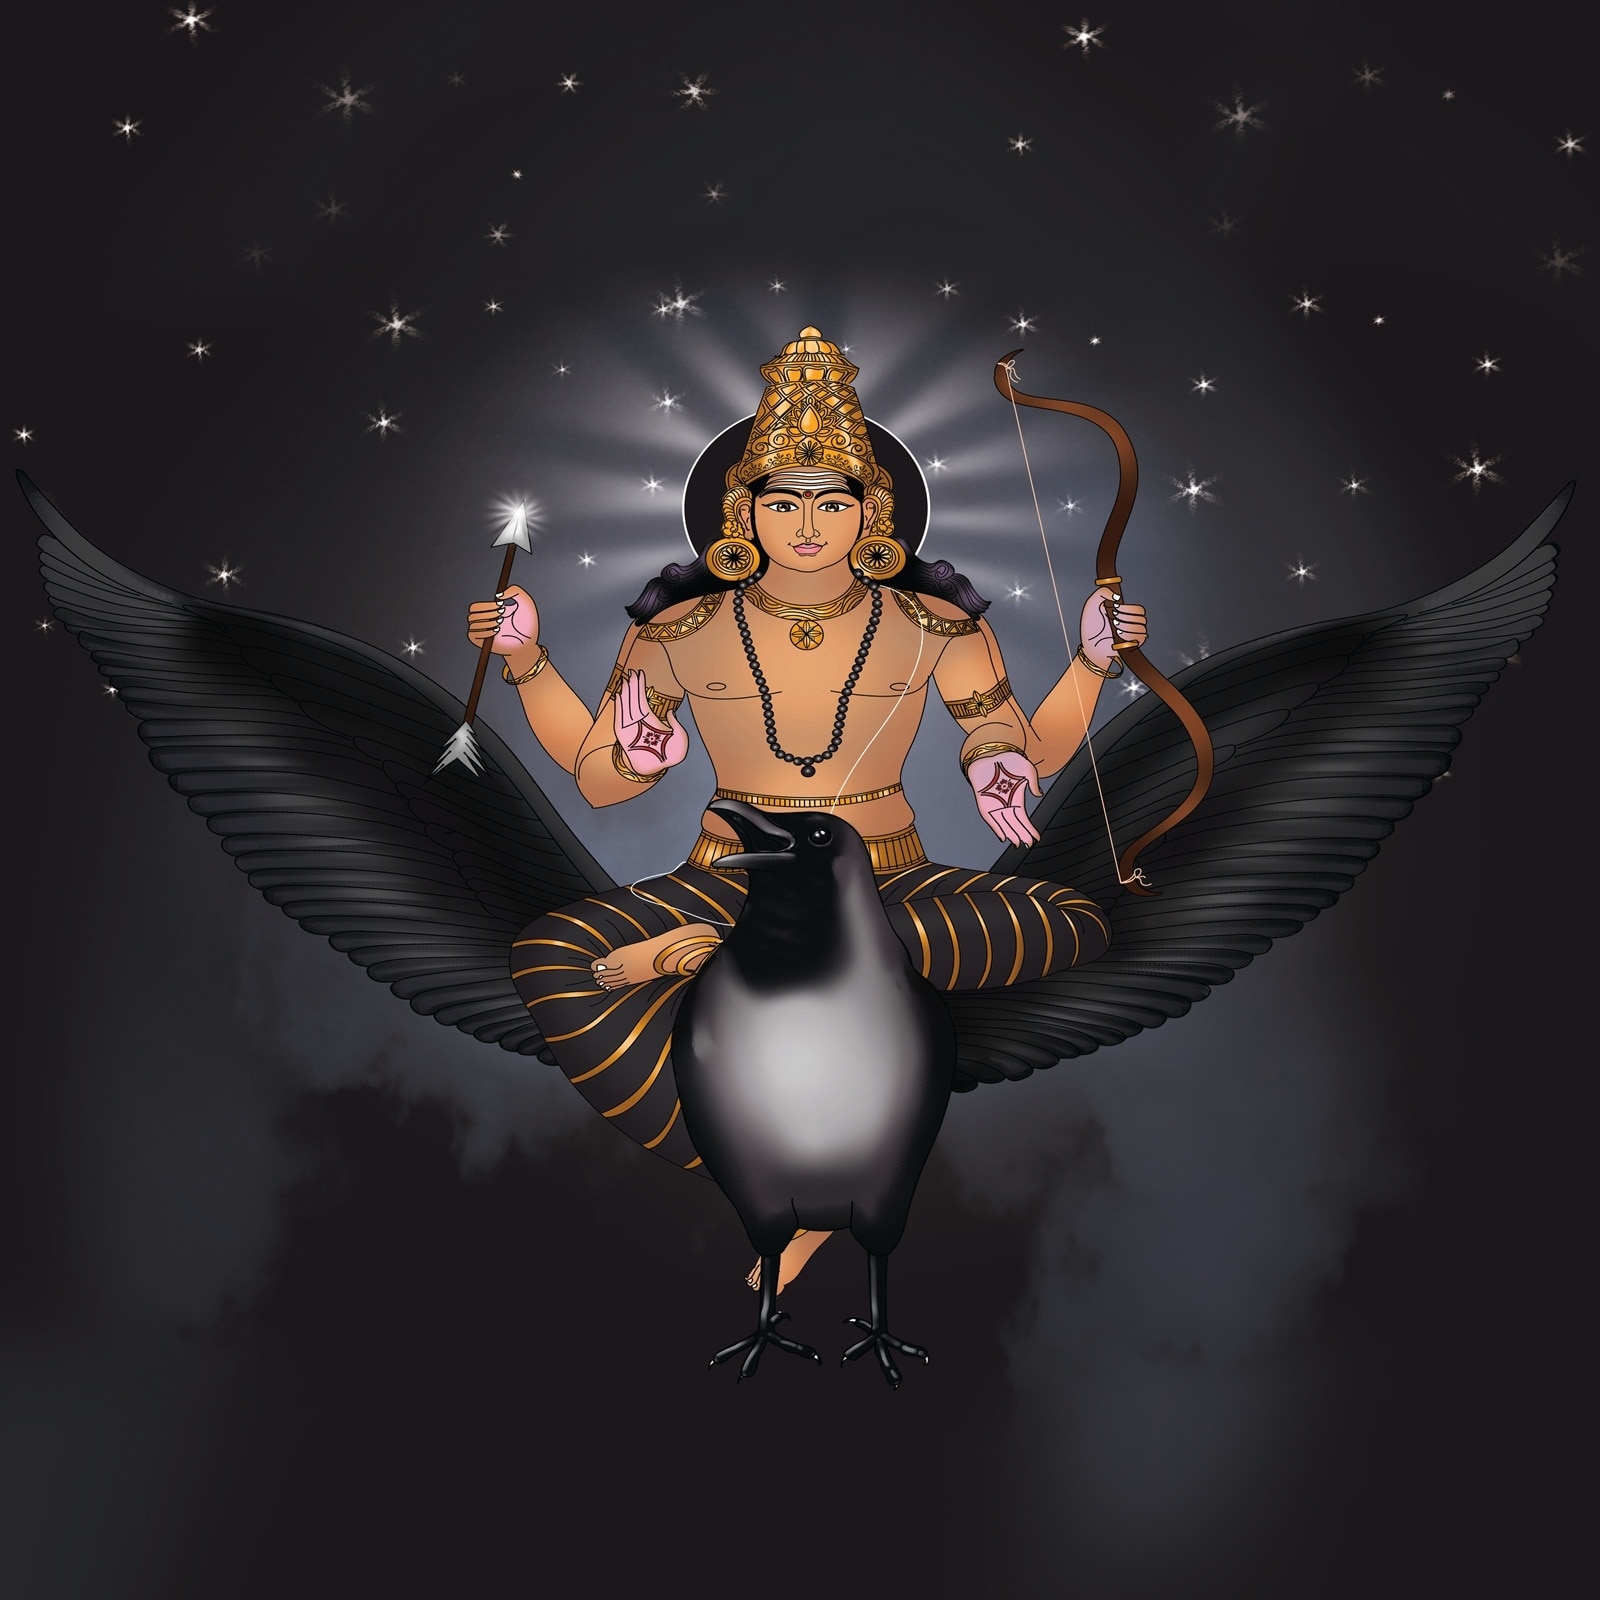 Shani Dhaiya 30 ఏళ్ల తర్వాత కుంభరాశిలోకి శని.. శని ప్రభావం నుంచి ఆ